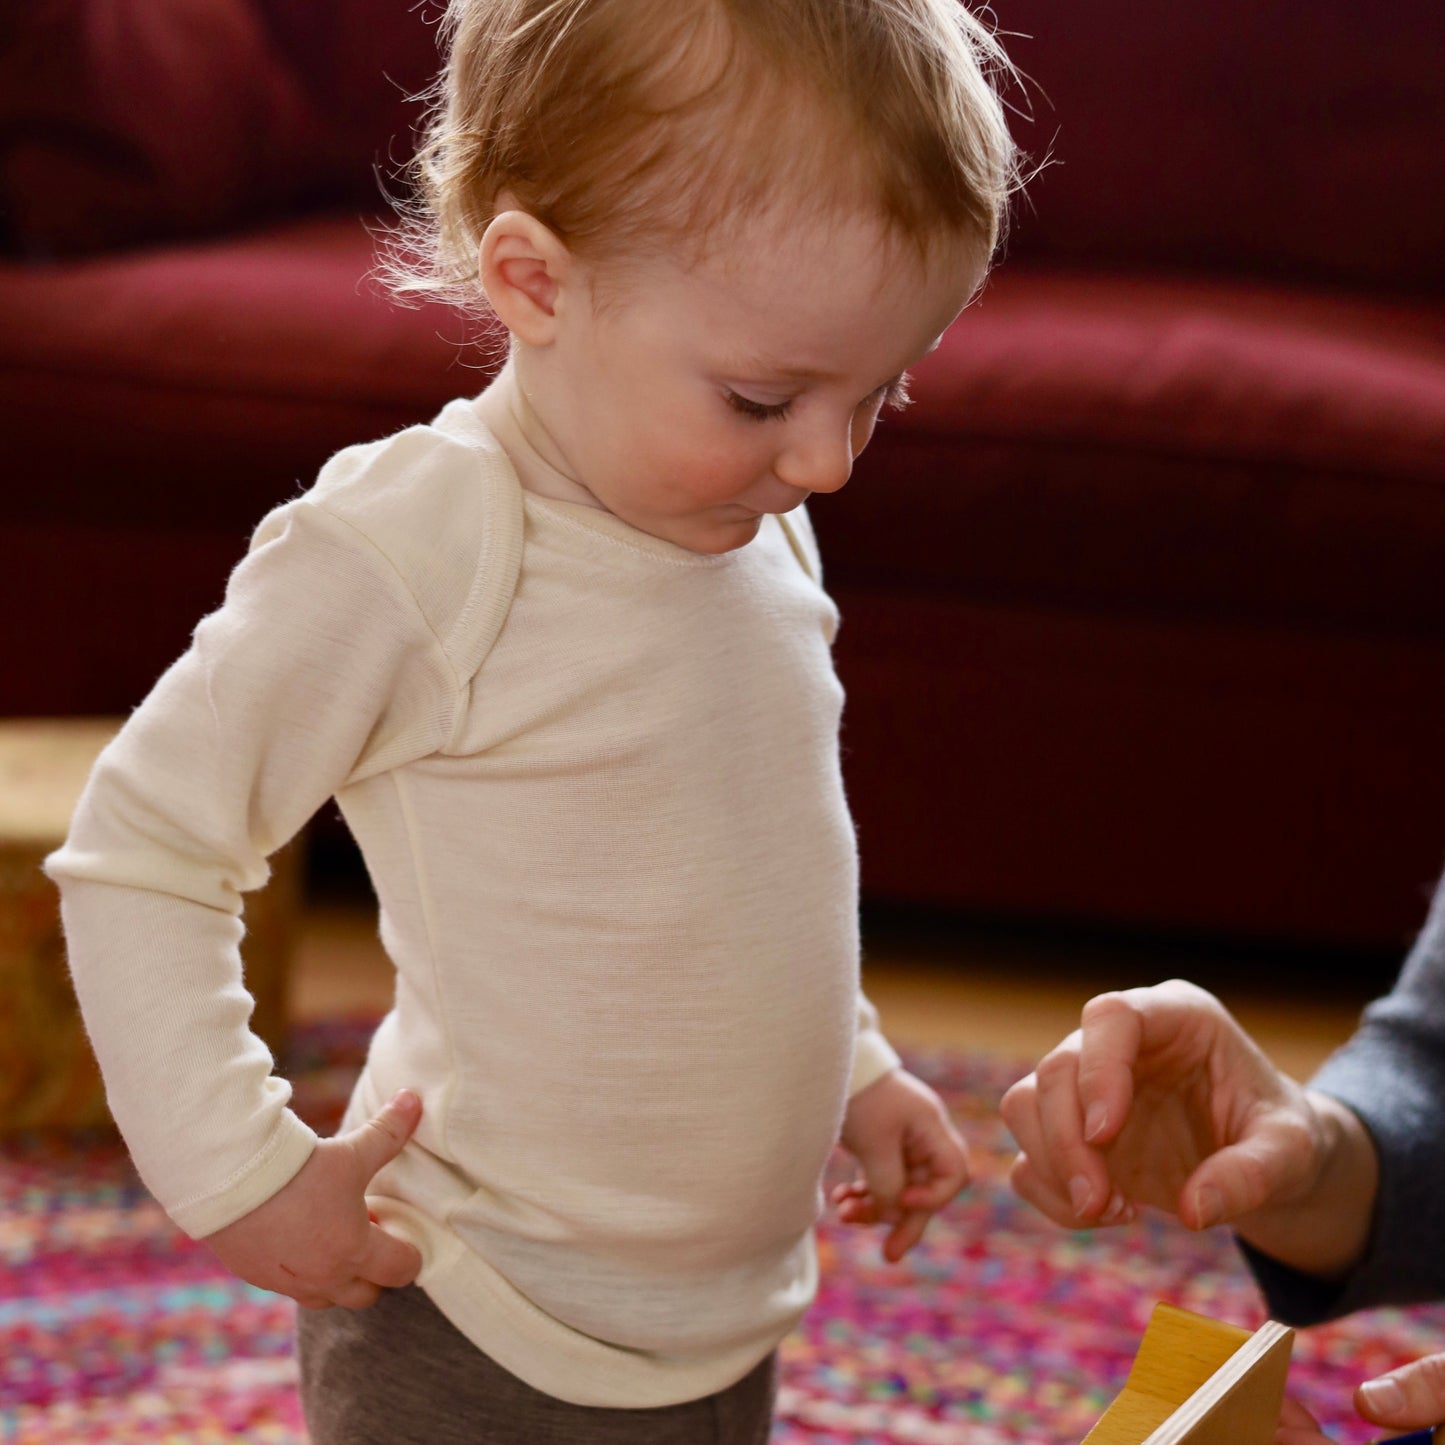 Hocosa Baby/Toddler Shirt Long Sleeve, Wool/Silk, Natural